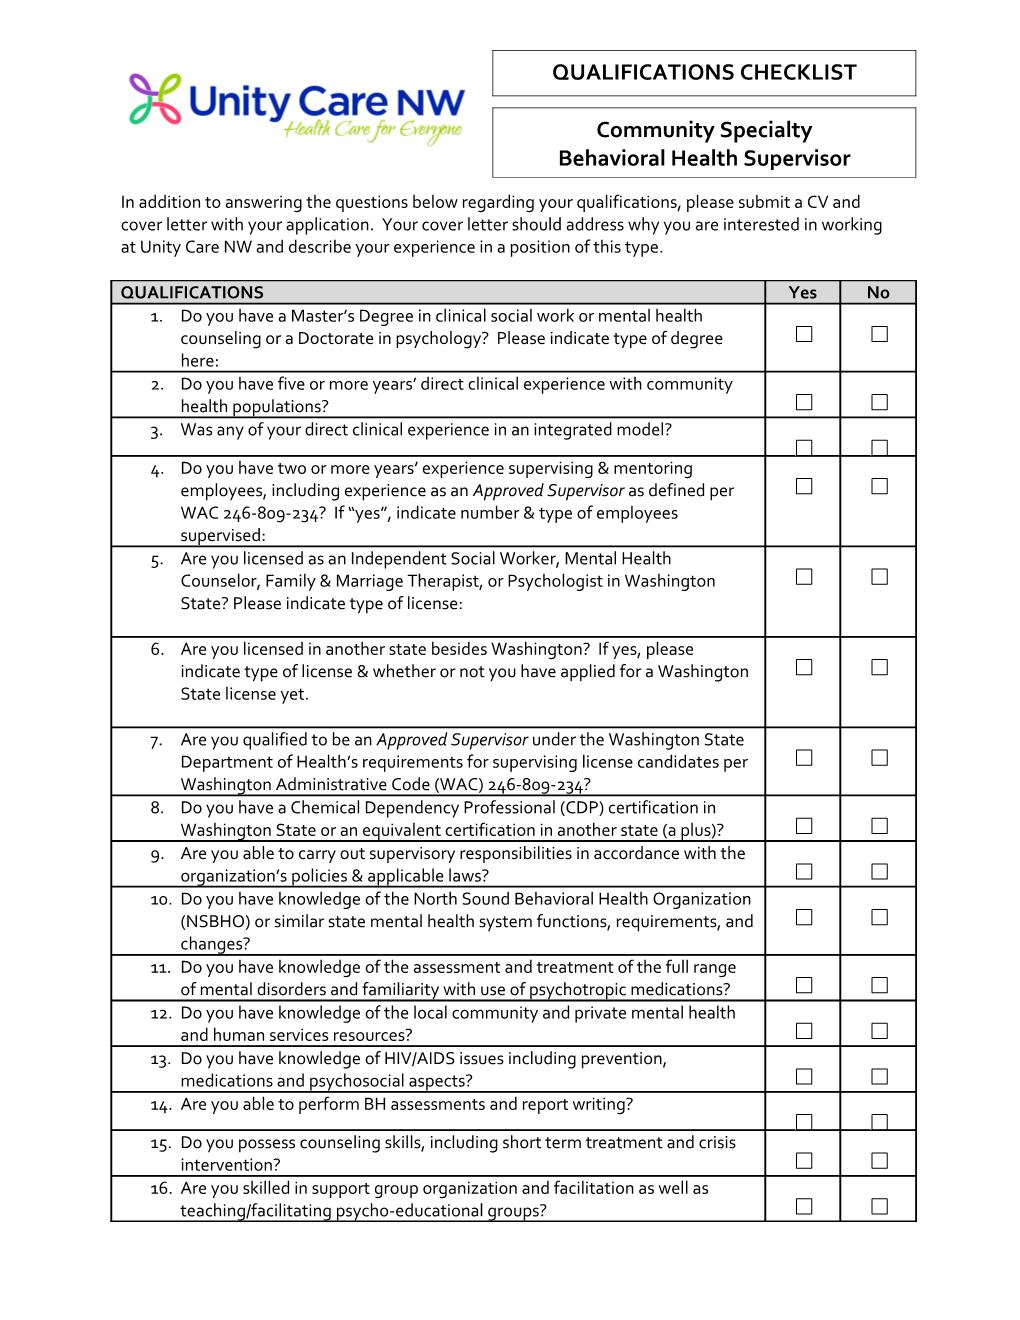 Minimum Qualifications Checklist